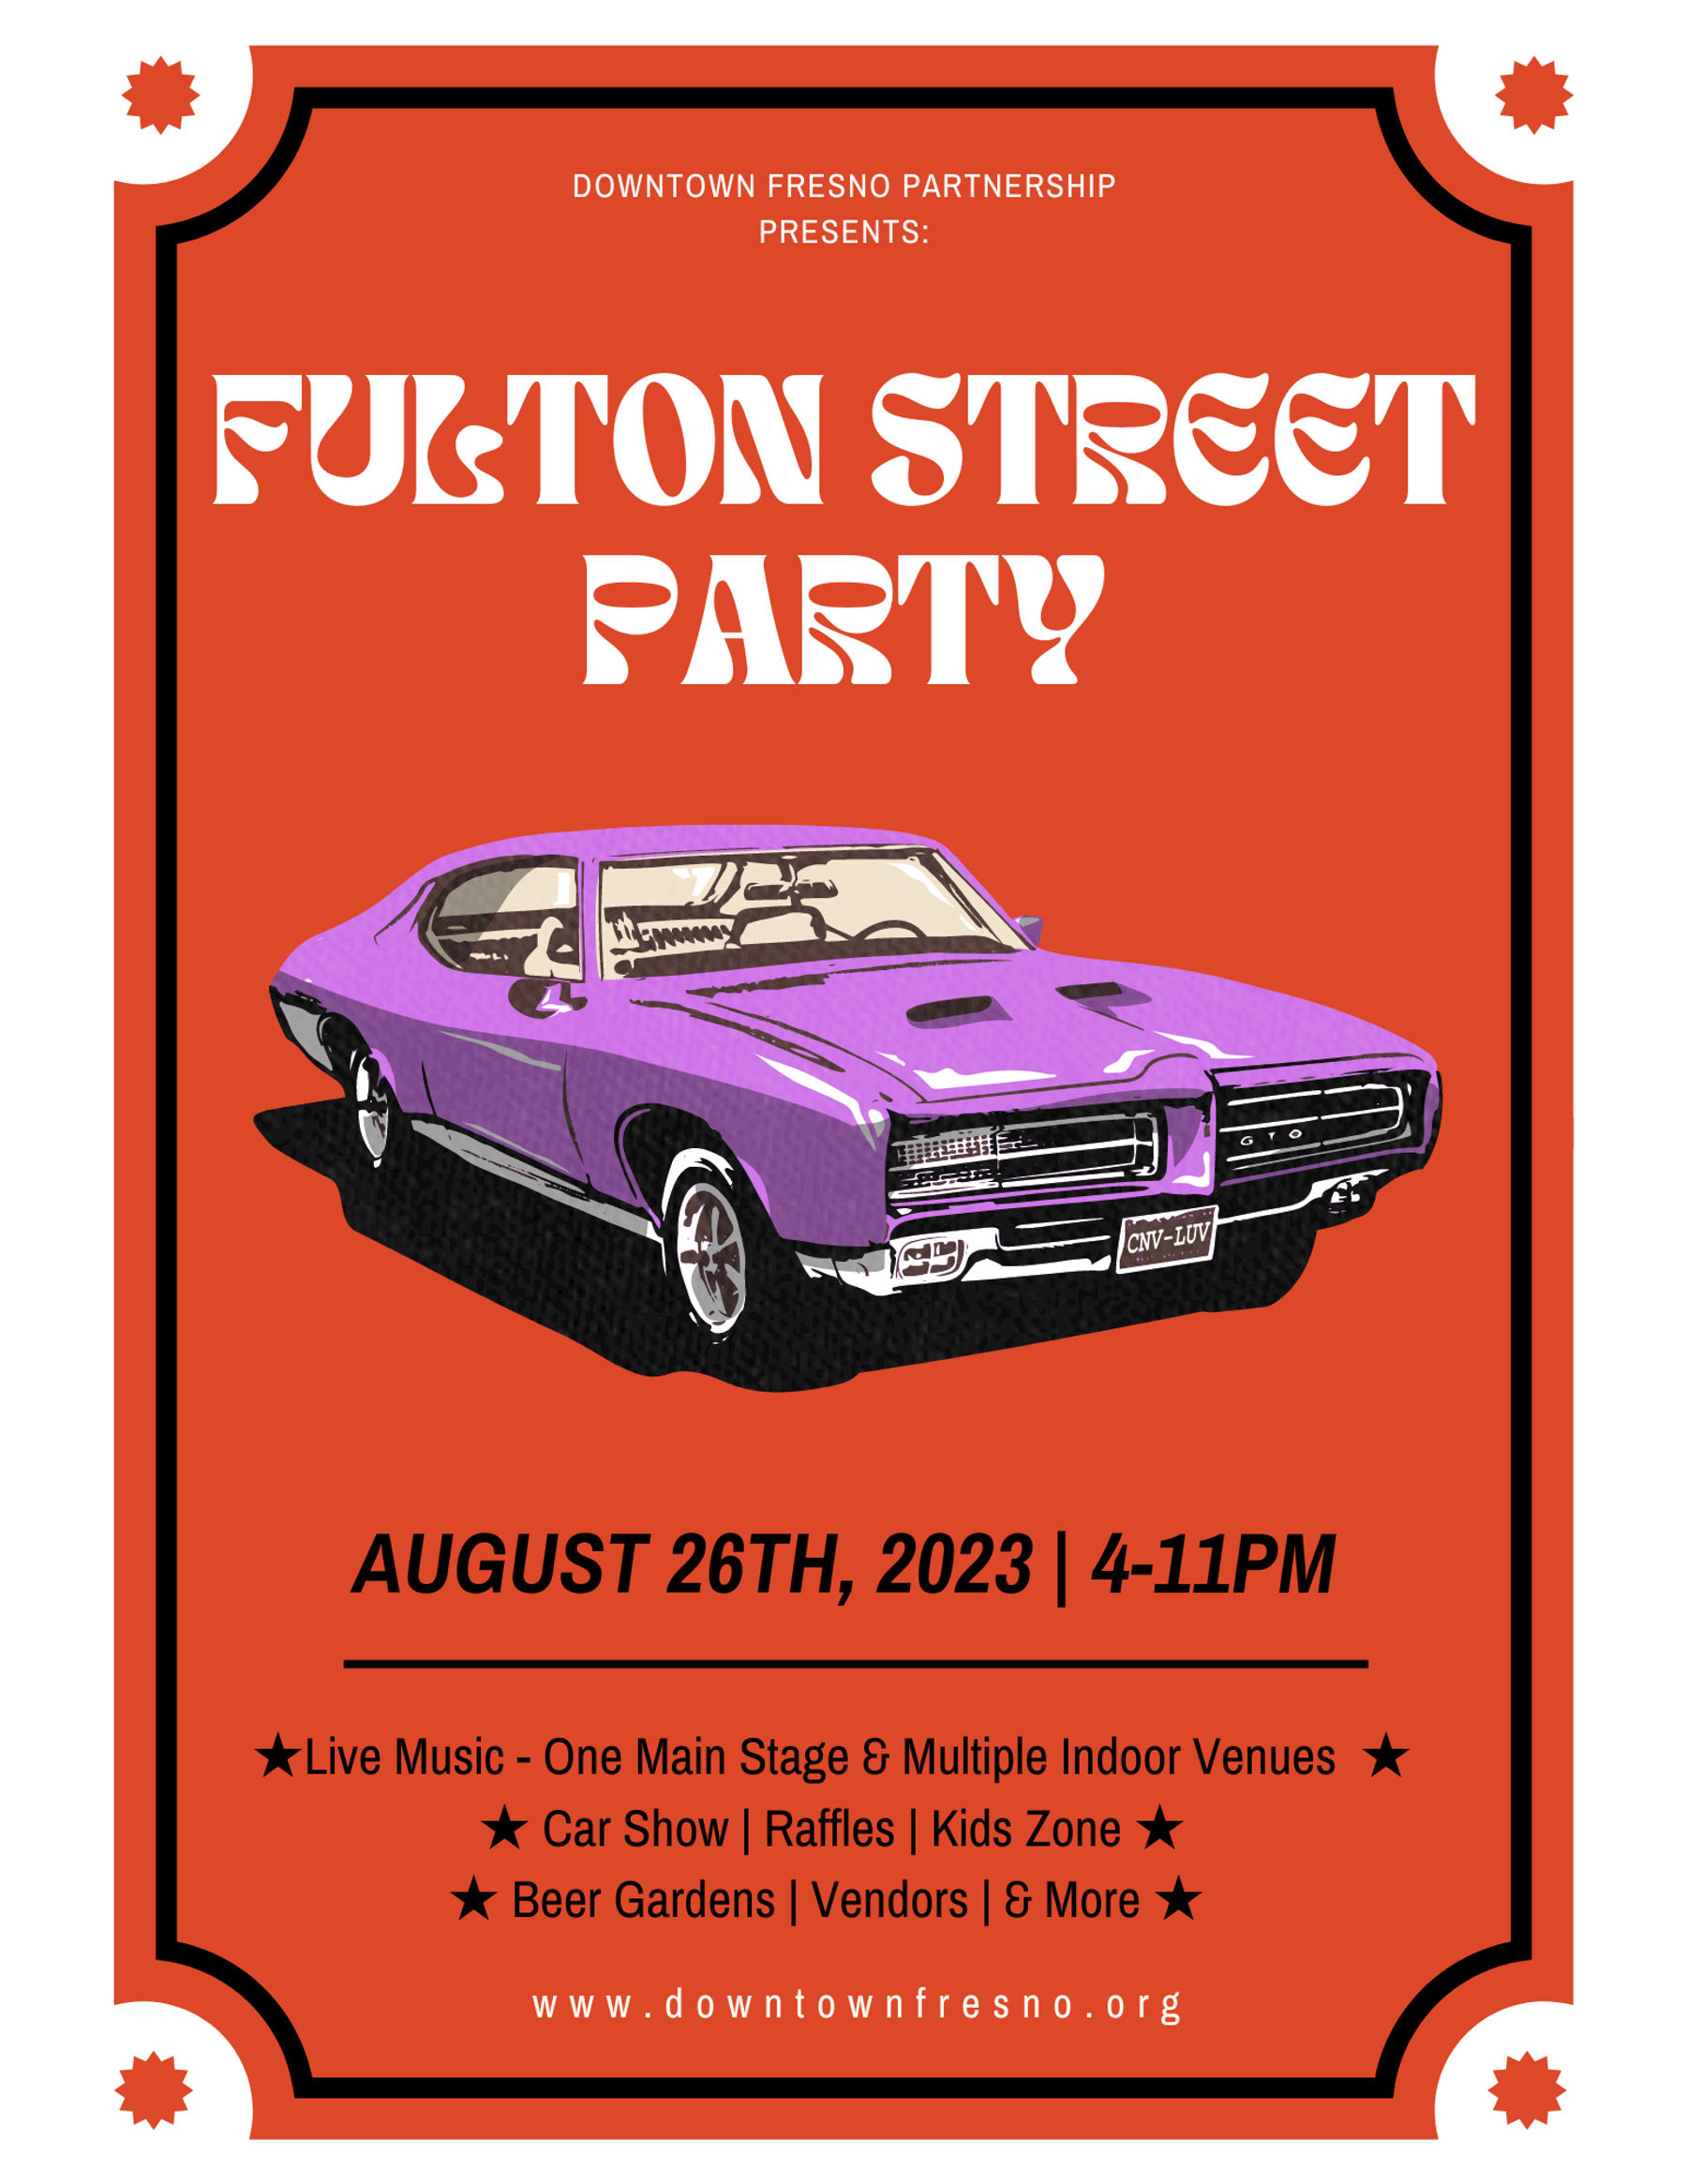 Fulton Street Party 2023 Downtown Fresno